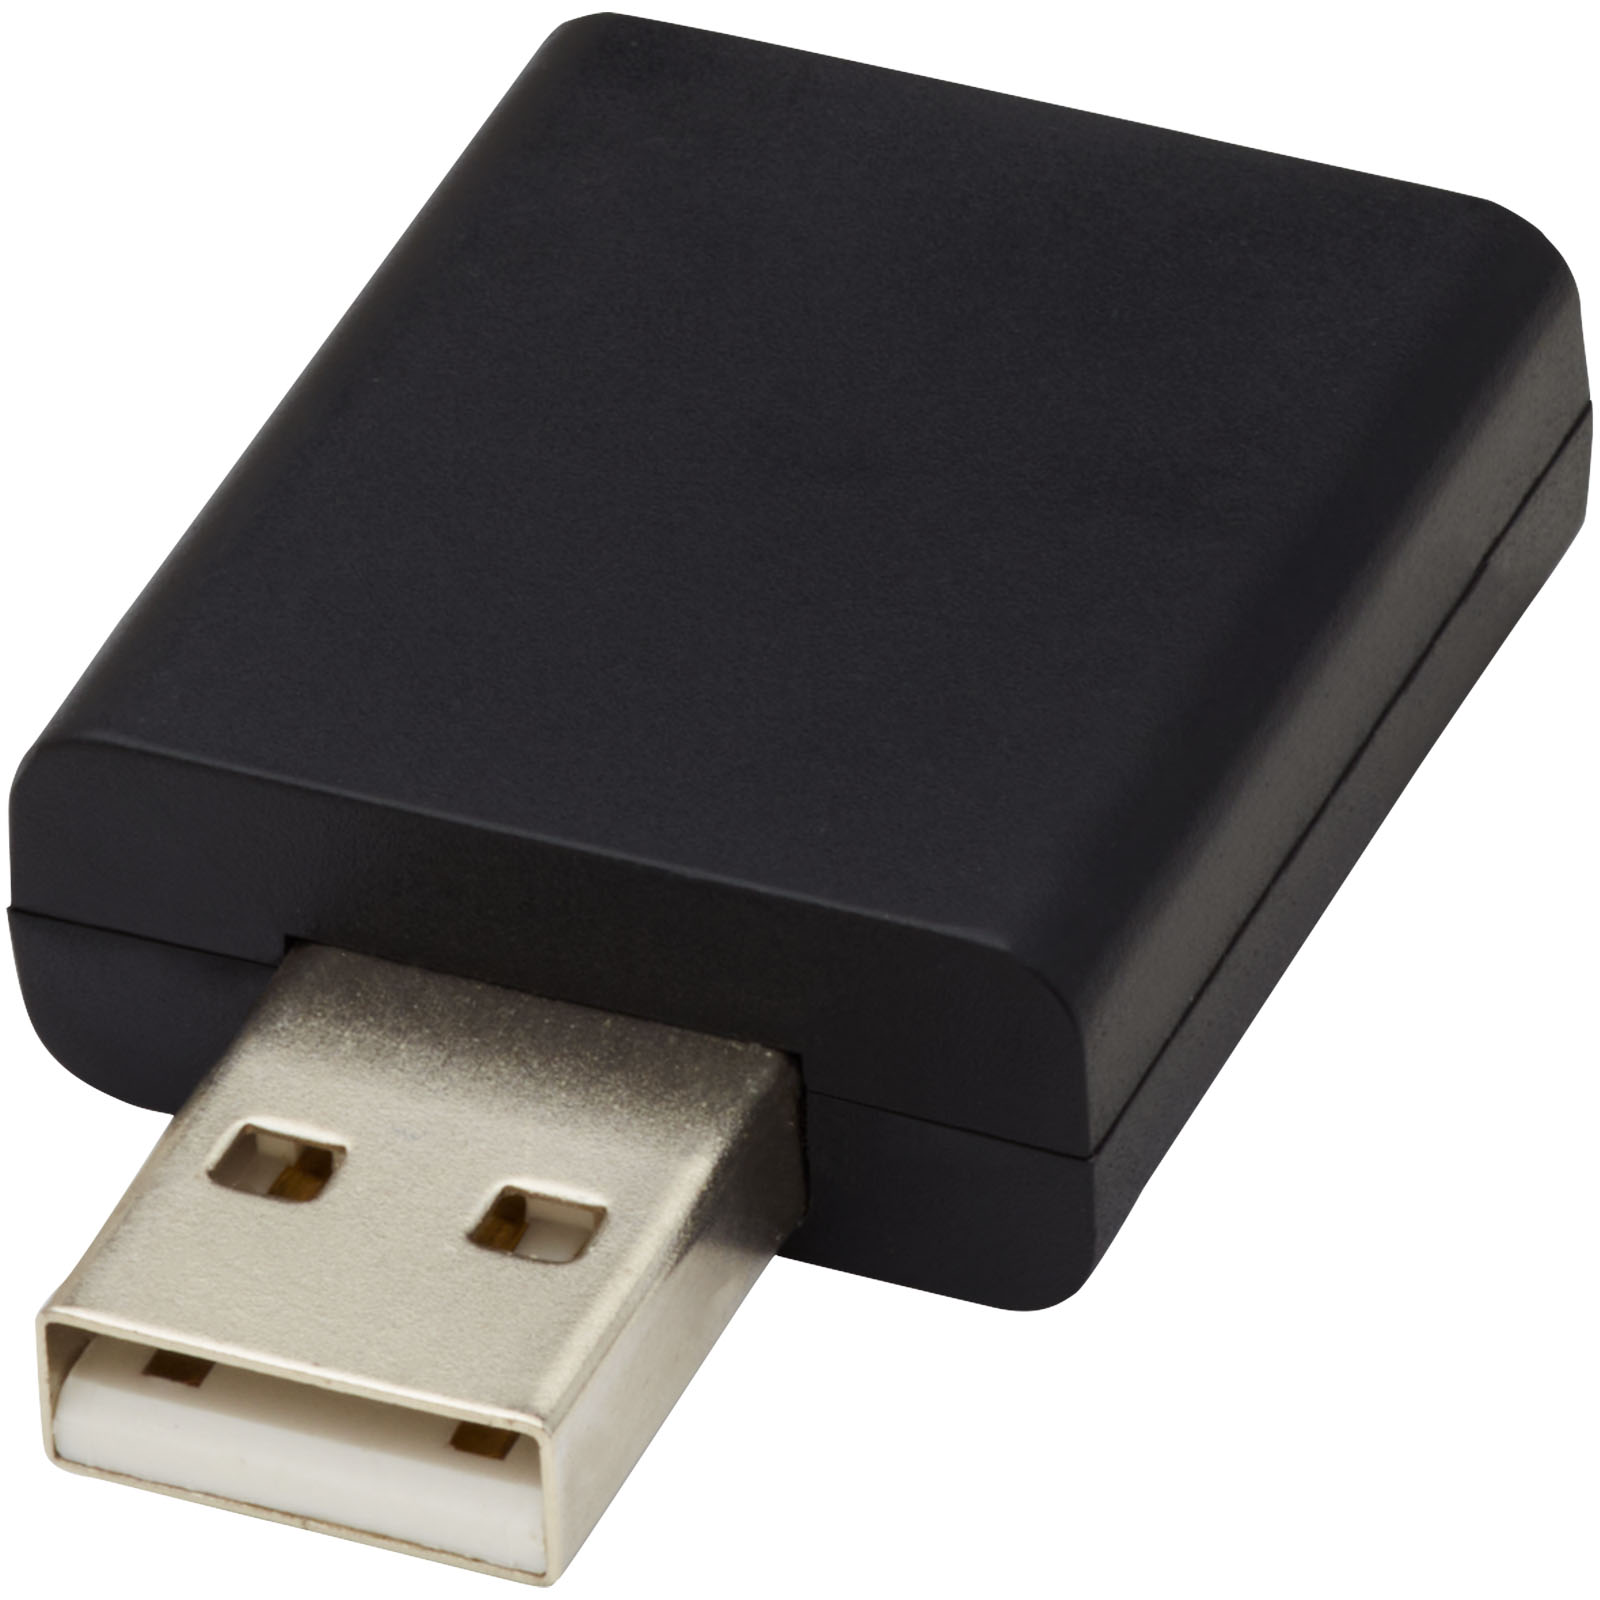 Accessoires pour ordinateur publicitaires - Bloqueur de données USB Incognito - 0